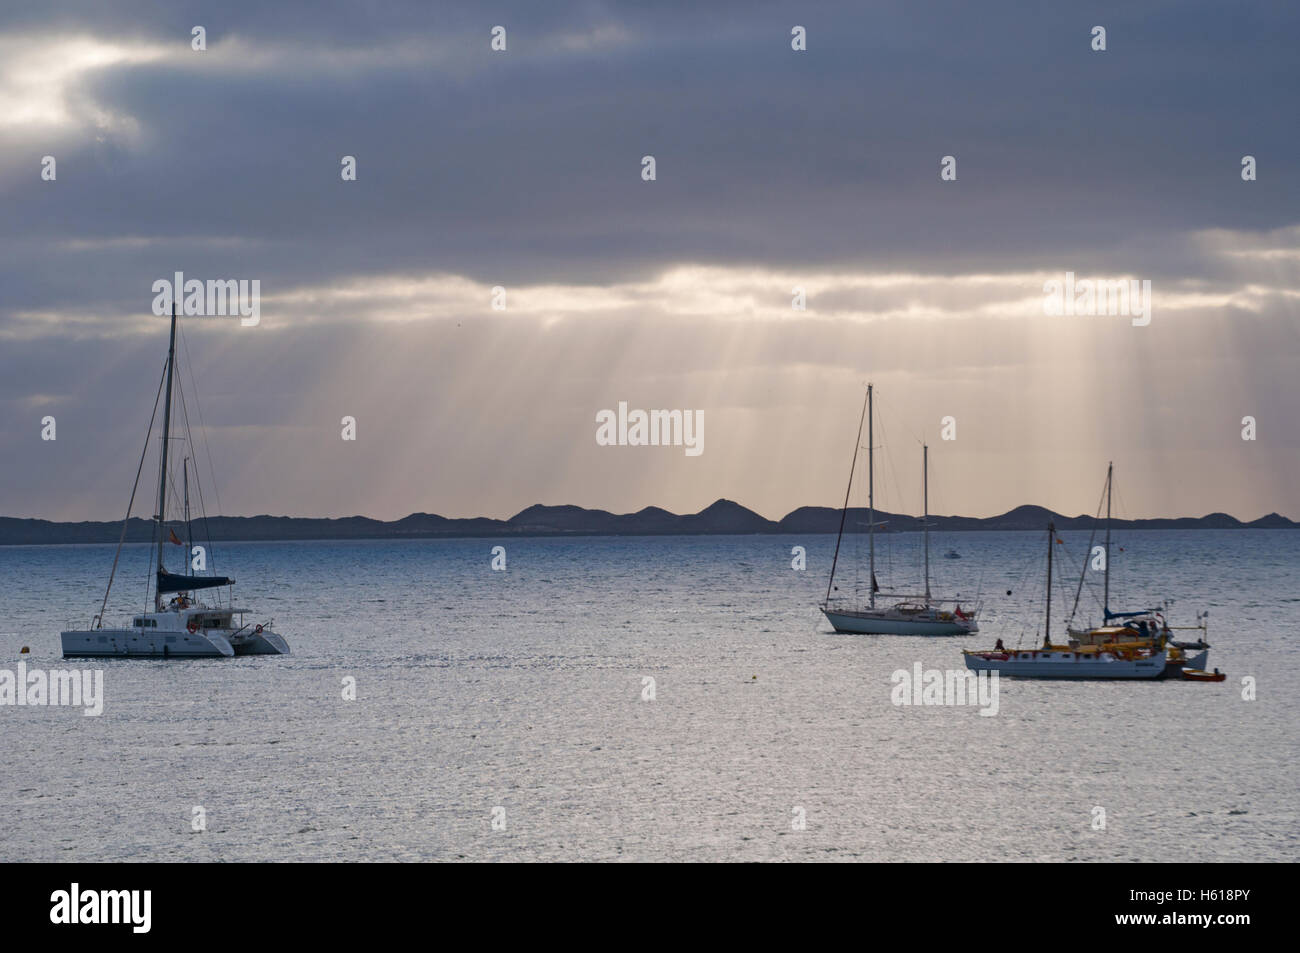 Fuerteventura Isole Canarie, Nord Africa, Spagna: barche a vela e a Dio di raggi all'alba a Corralejo, la famosa città sulla punta nord dell'isola Foto Stock